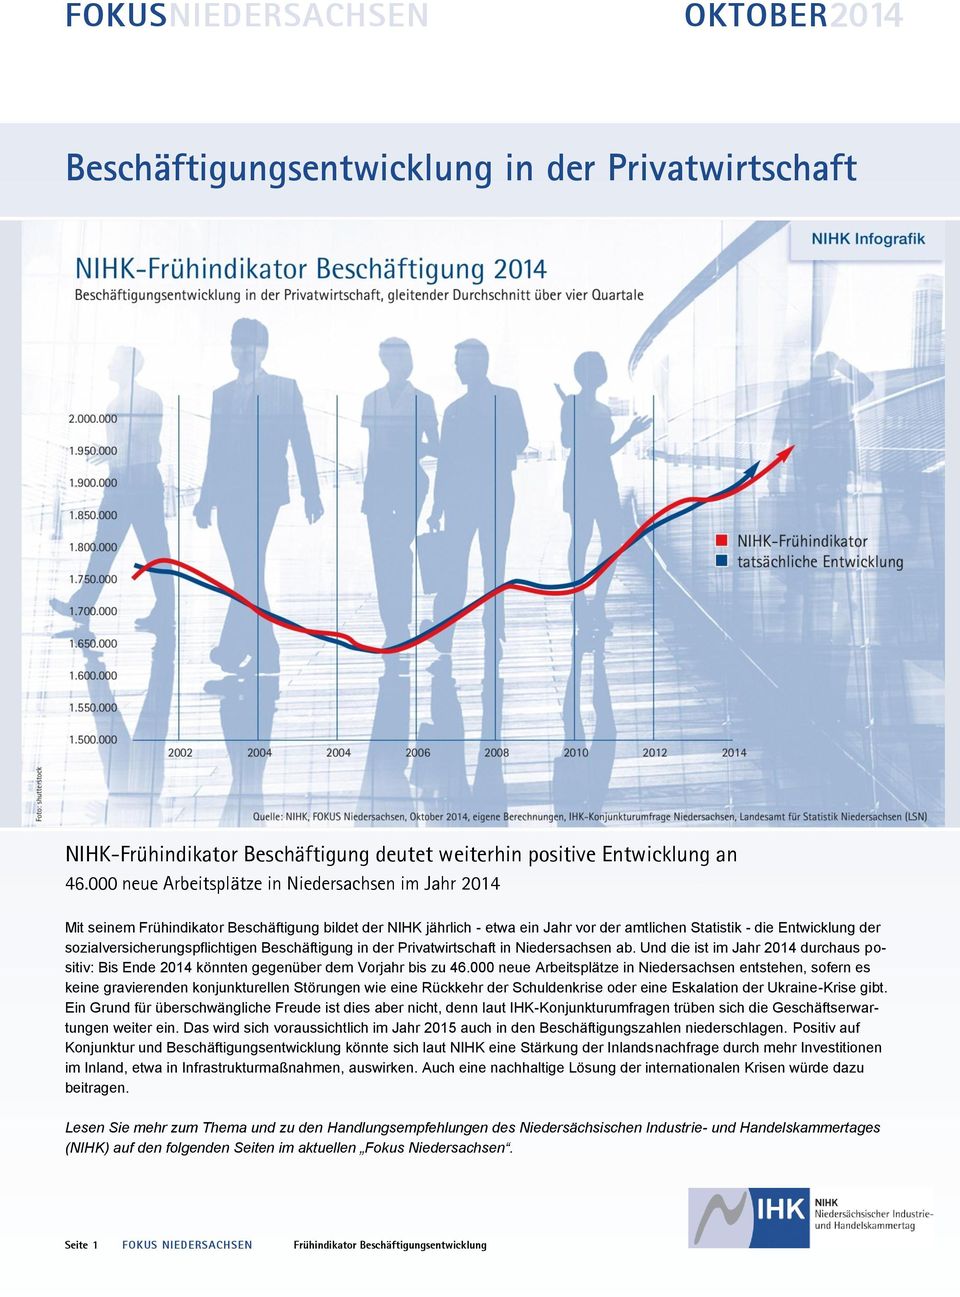 sozialversicherungspflichtigen Beschäftigung in der Privatwirtschaft in Niedersachsen ab. Und die ist im Jahr 2014 durchaus positiv: Bis Ende 2014 könnten gegenüber dem Vorjahr bis zu 46.